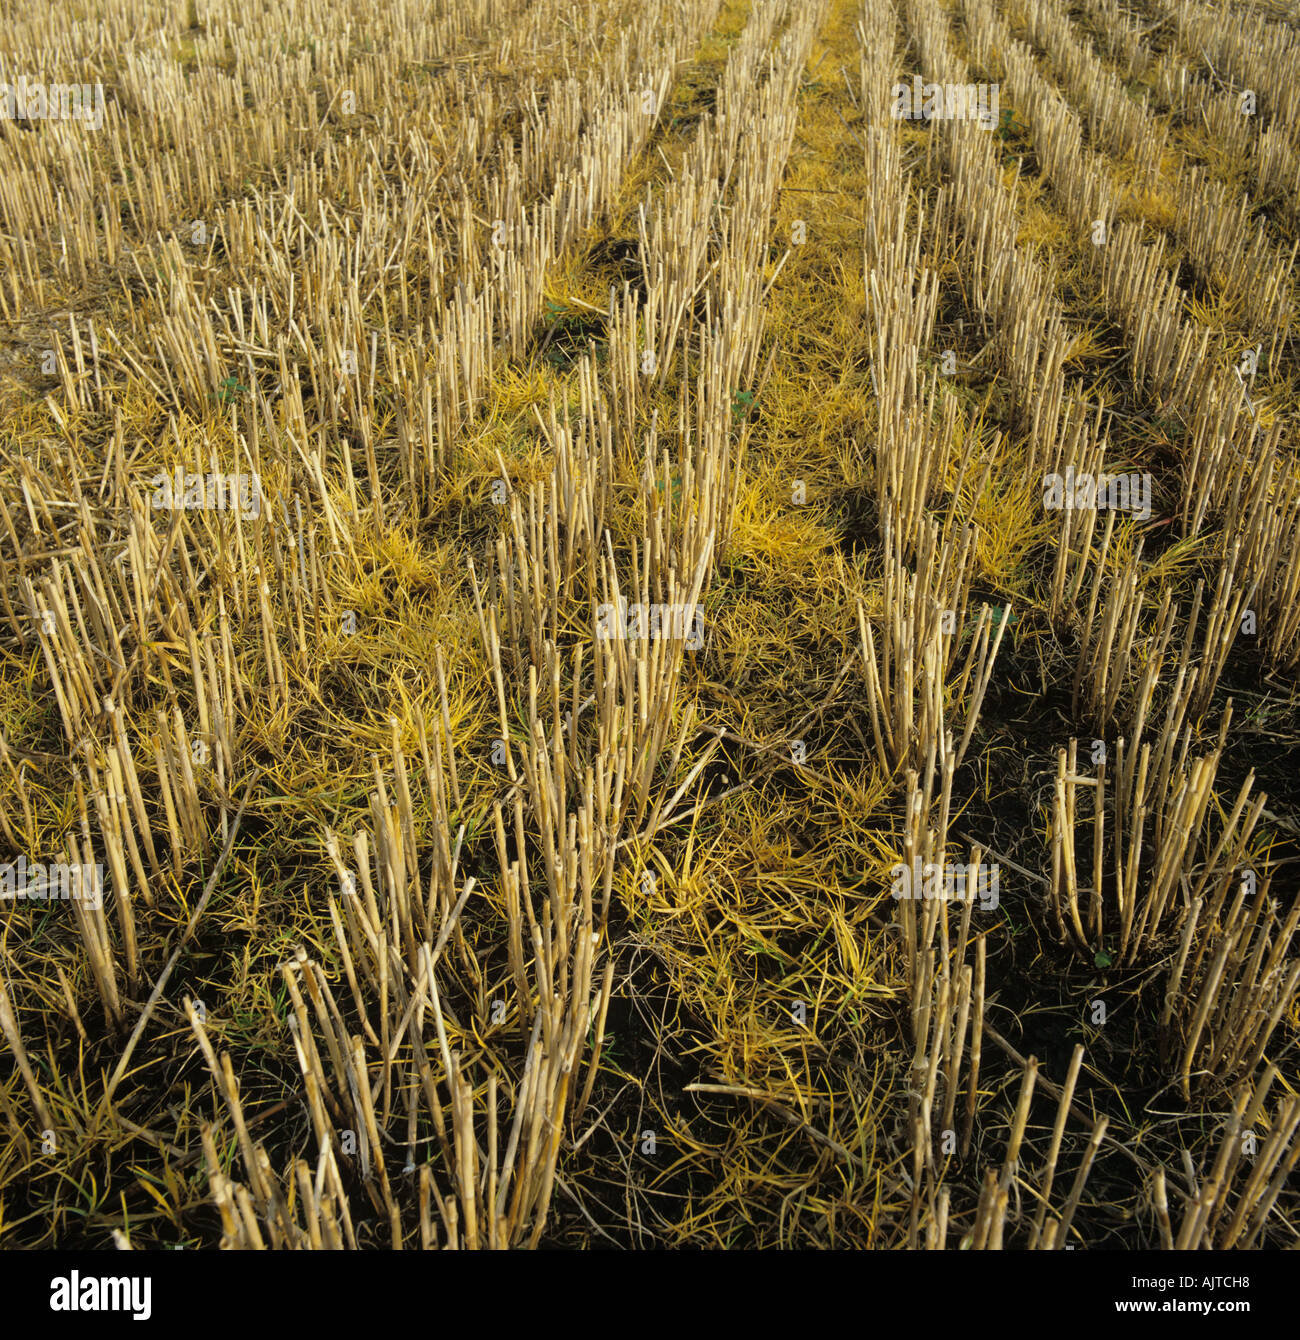 Wirkung von Glyphosat Herbizid gesprüht auf Rasen Unkraut Freiwillige in Stoppeln Stockfoto